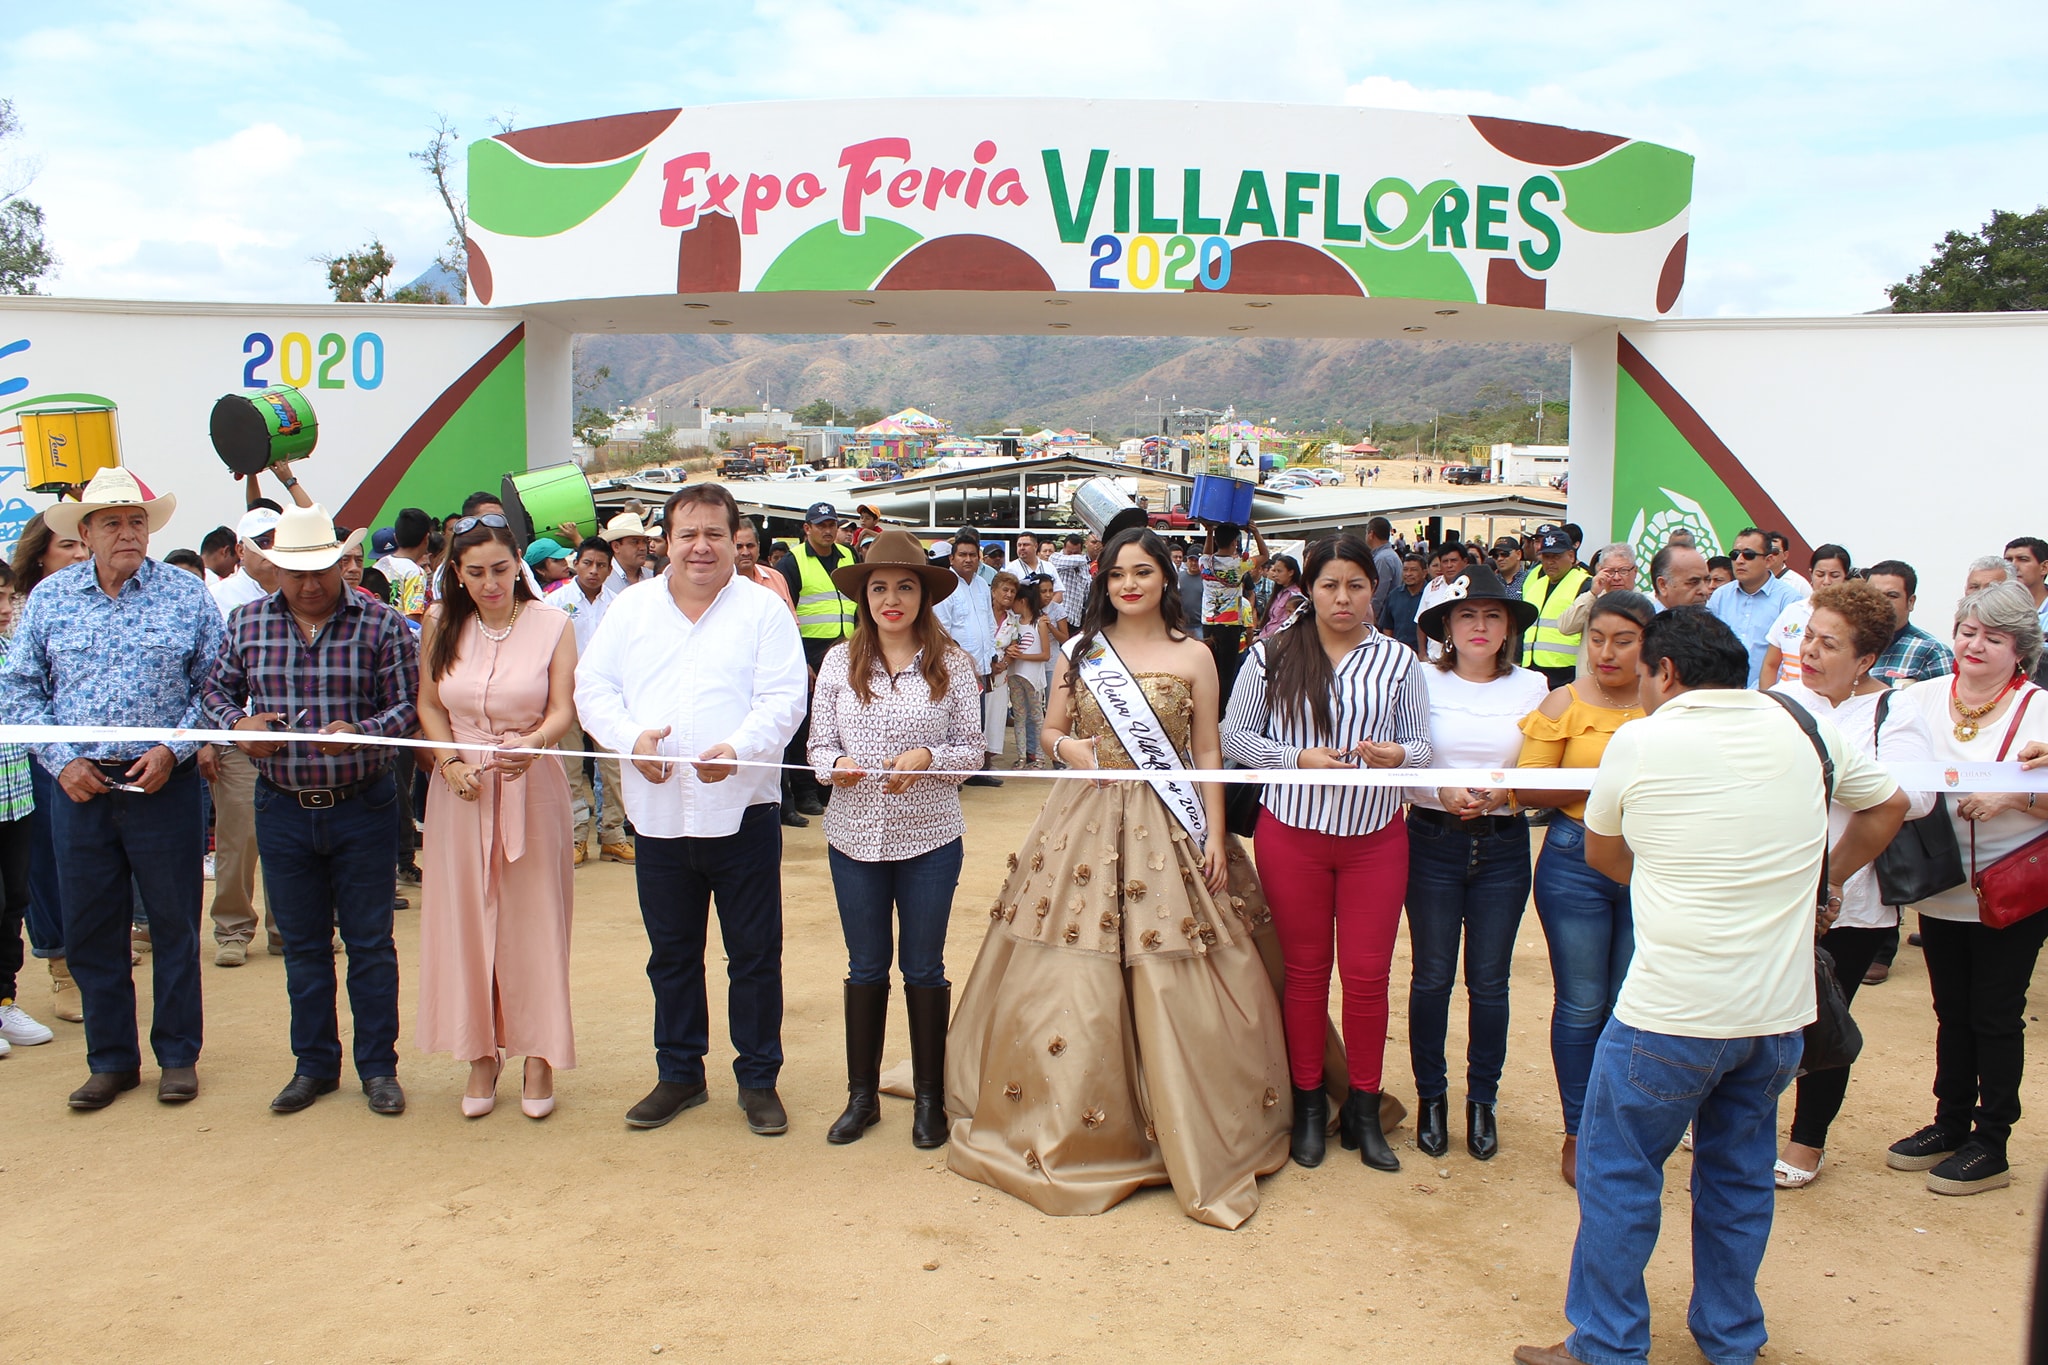 Inaugura Expoferia Villaflores 2020 en honor al Señor Esquipulas